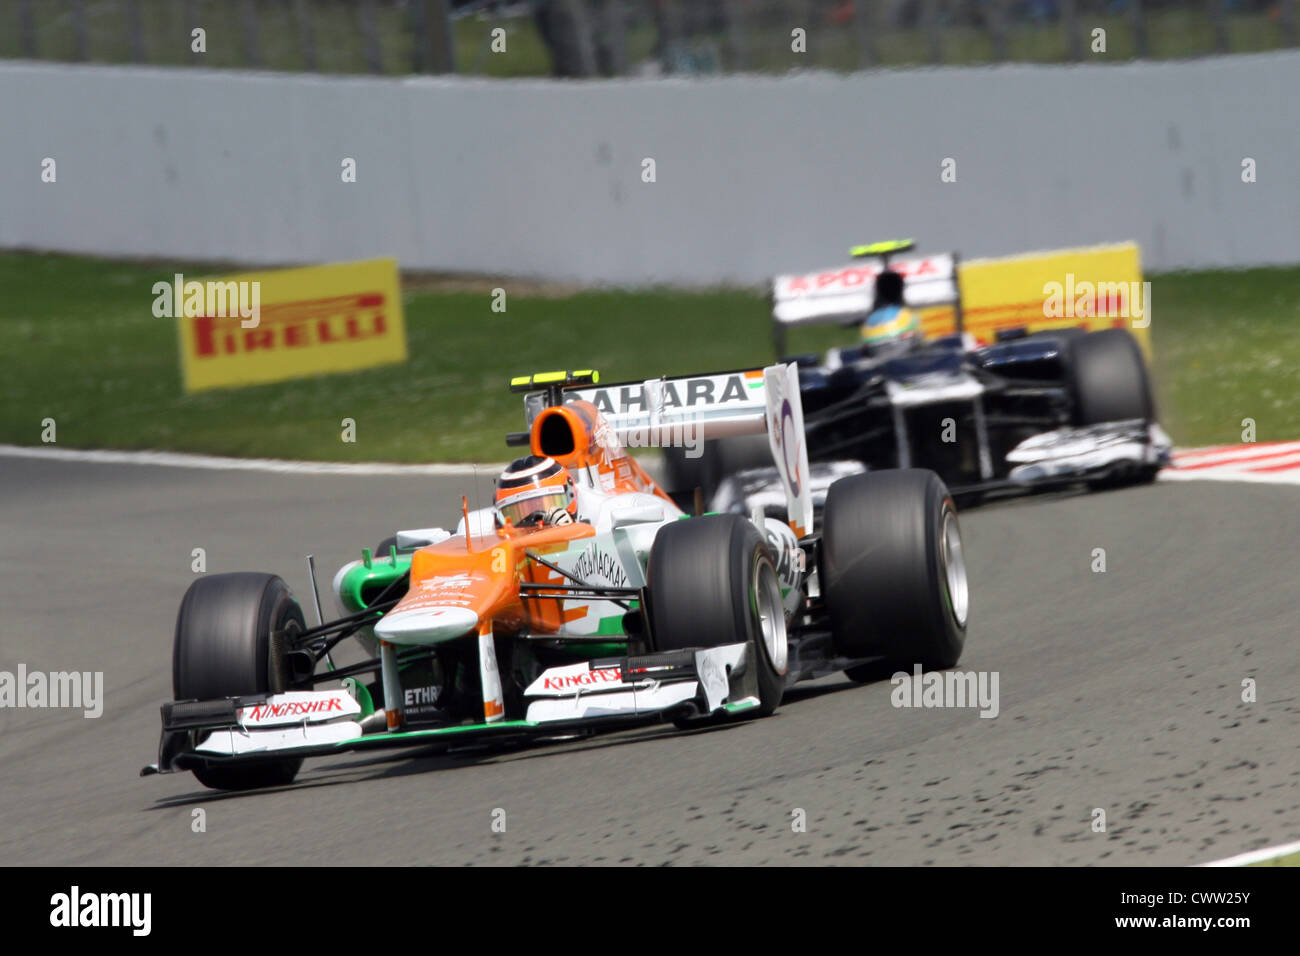 Nico Hulkenberg (Force India F1) Gran Premio de Gran Bretaña en Silverstone, Reino Unido. Fórmula Uno, F1 Foto de stock